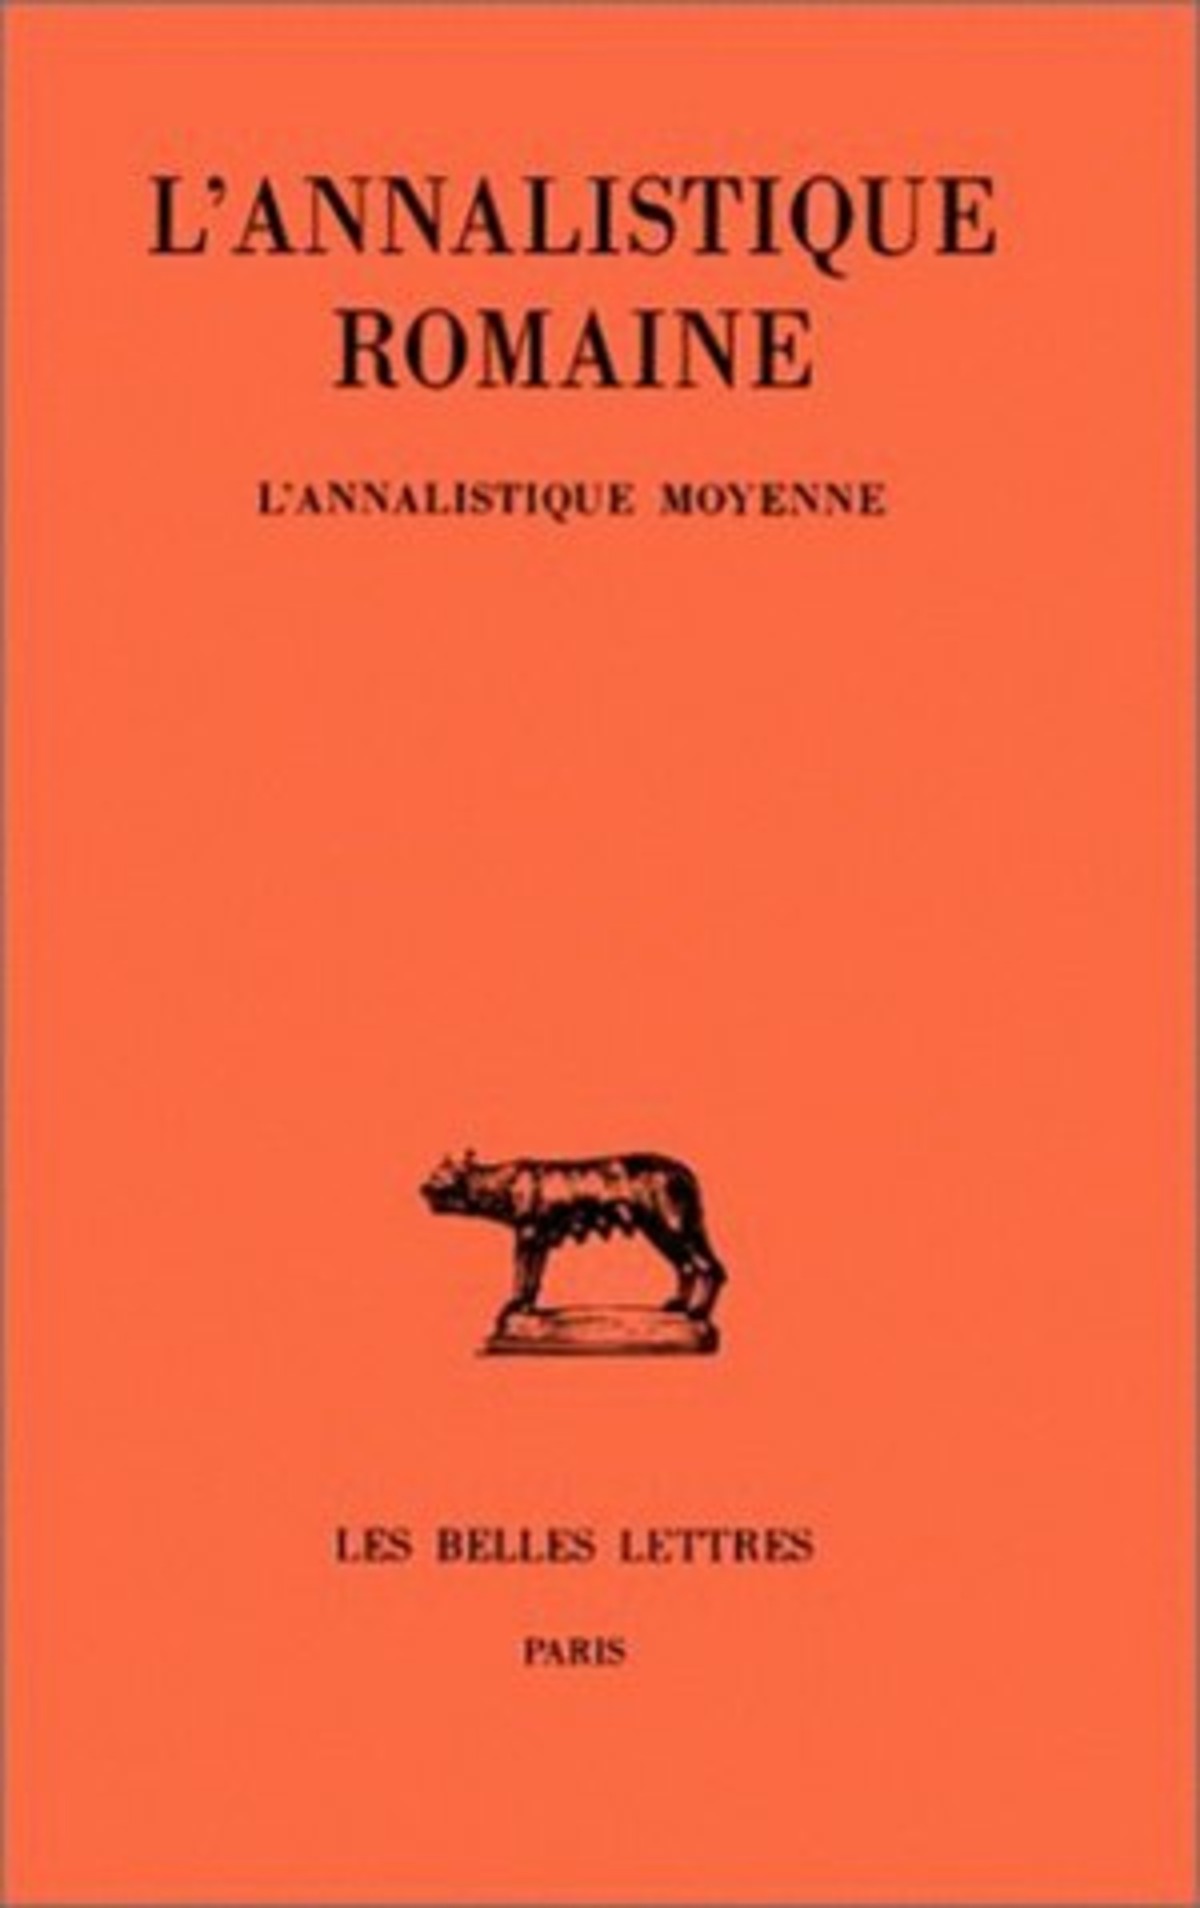 L'Annalistique romaine. Tome II : L'Annalistique Moyenne (Fragments)